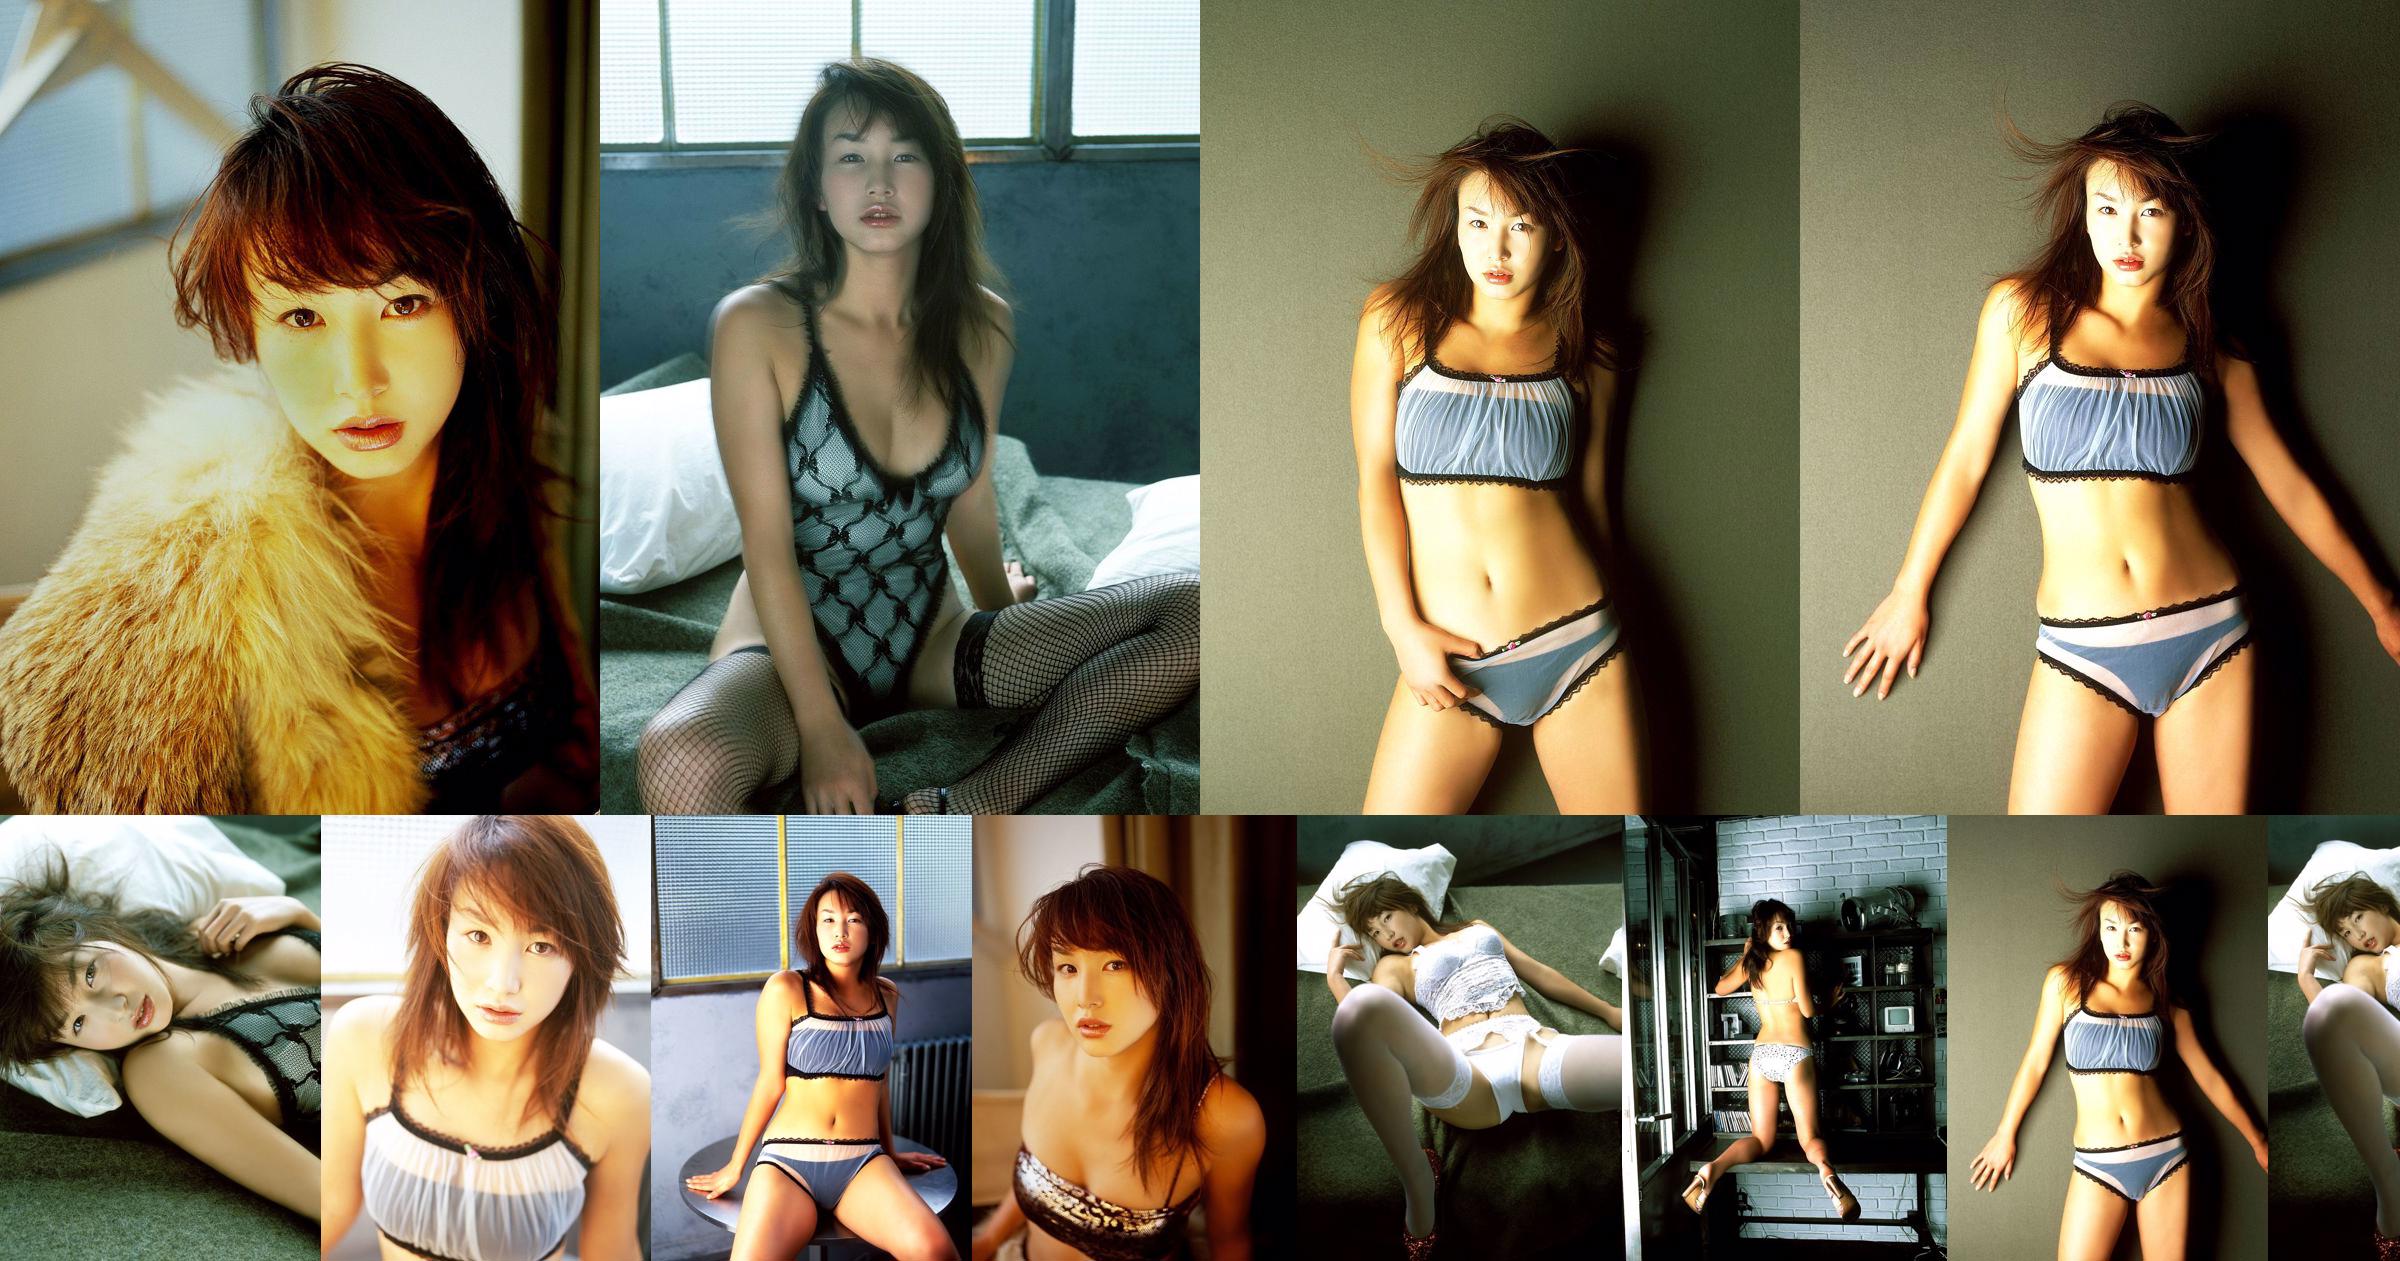 [X-City] Dokkiri Queen No.016 Momo Nakamura / Momo Nakamura Profile No.f9a363 หน้า 6